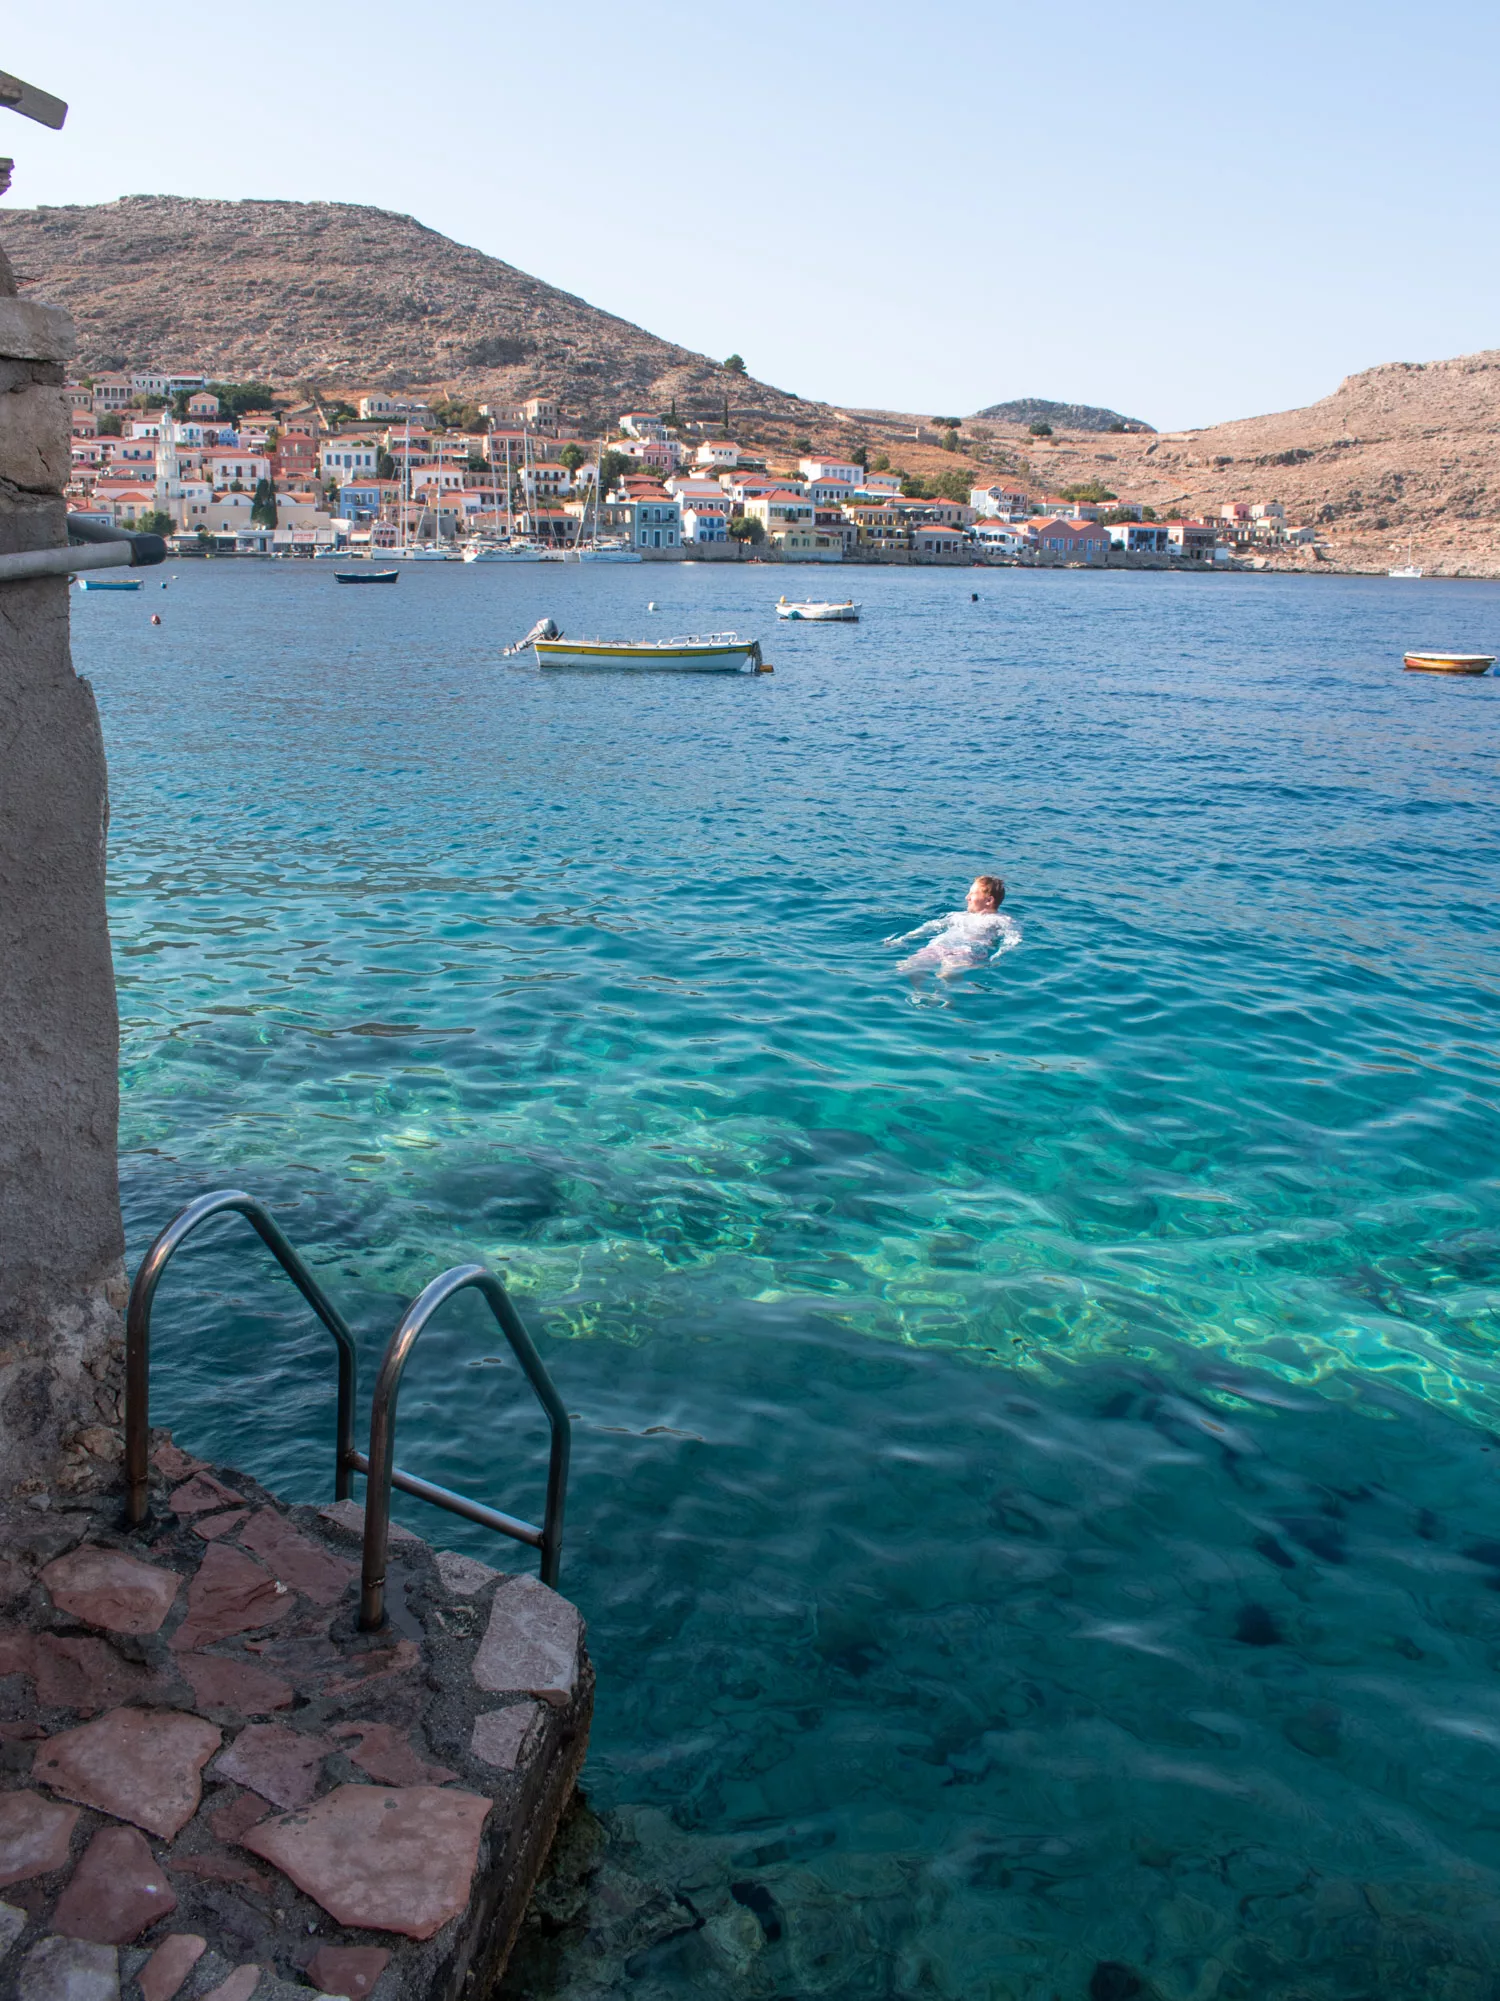 How to reach Halki island Greece